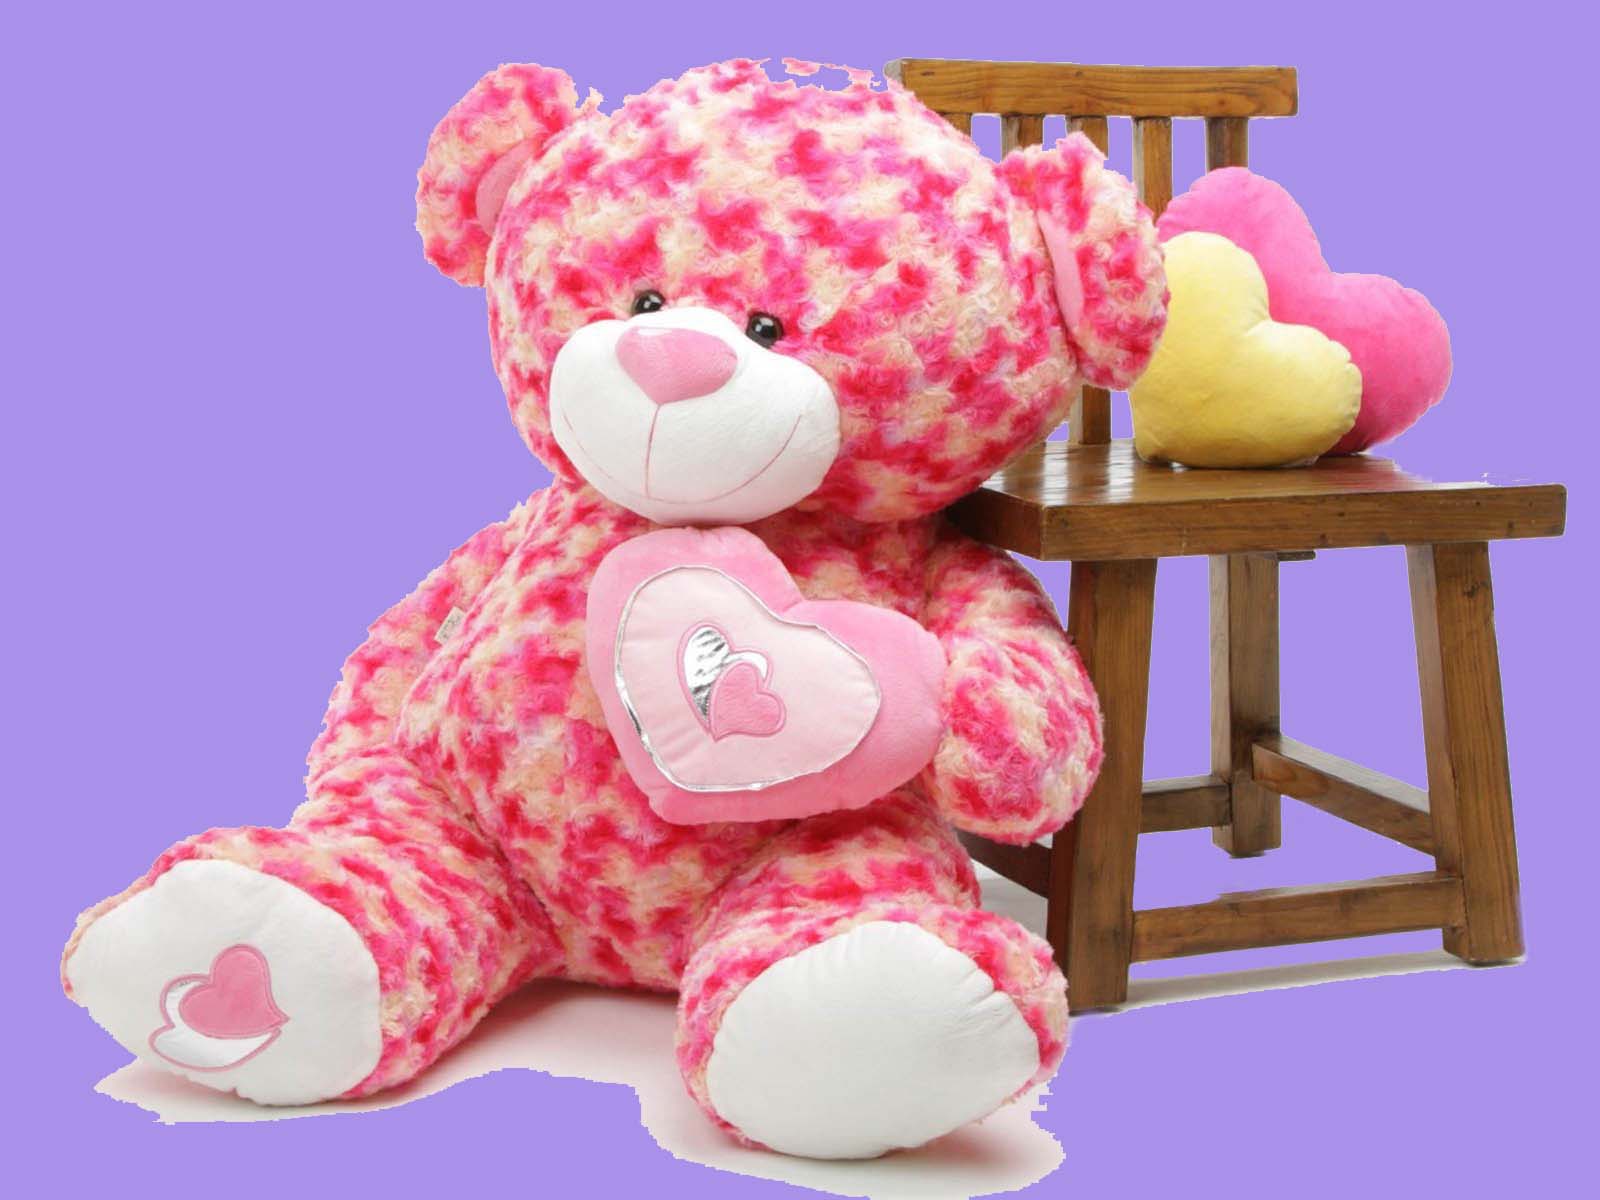 Teddy bear around. Плюшевый мишка. Плюшевые игрушки. Красивый плюшевый мишка. Большой плюшевый медведь.